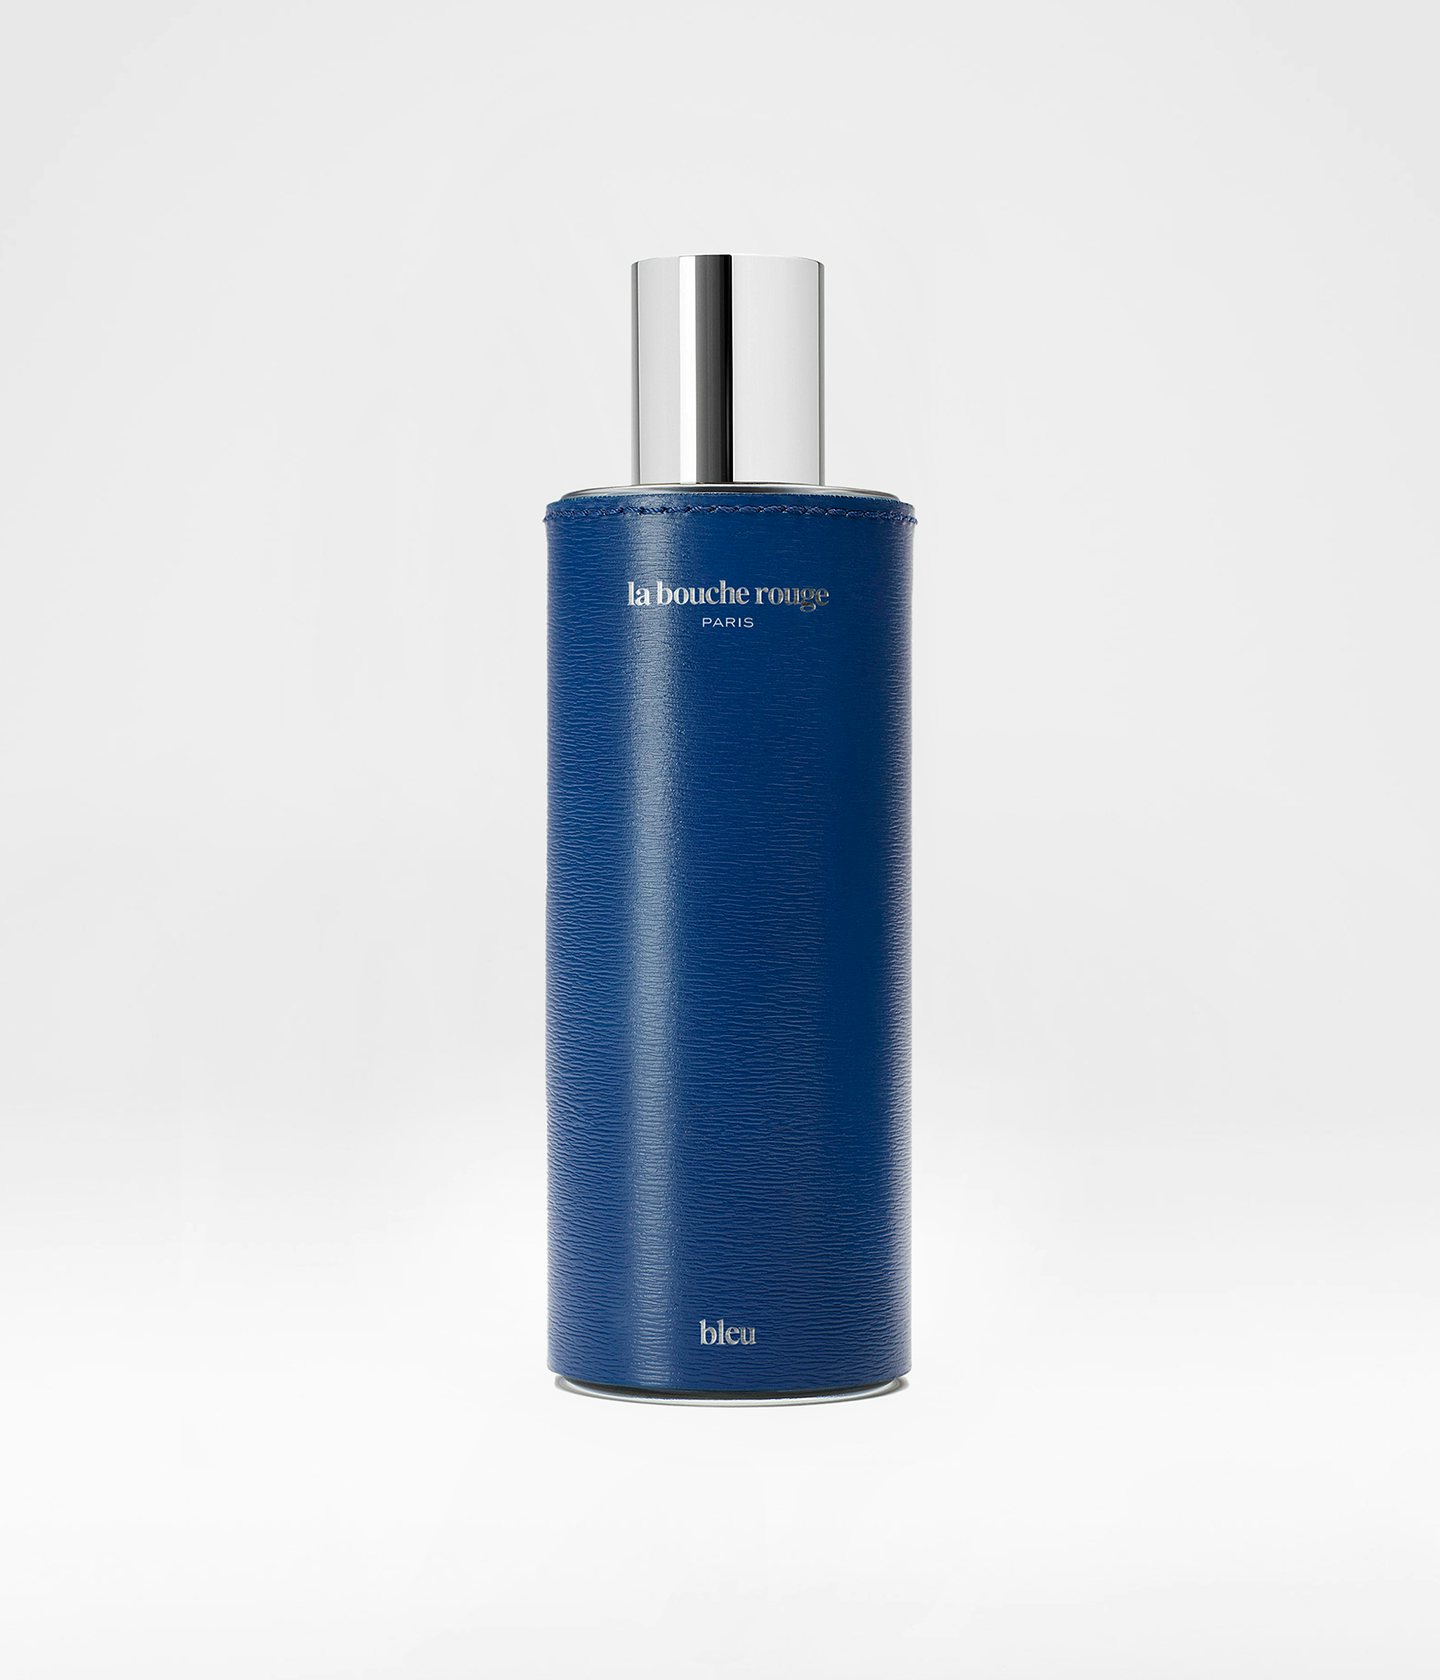 La bouche rouge Extrait de Parfum Bleu in bleu leather case